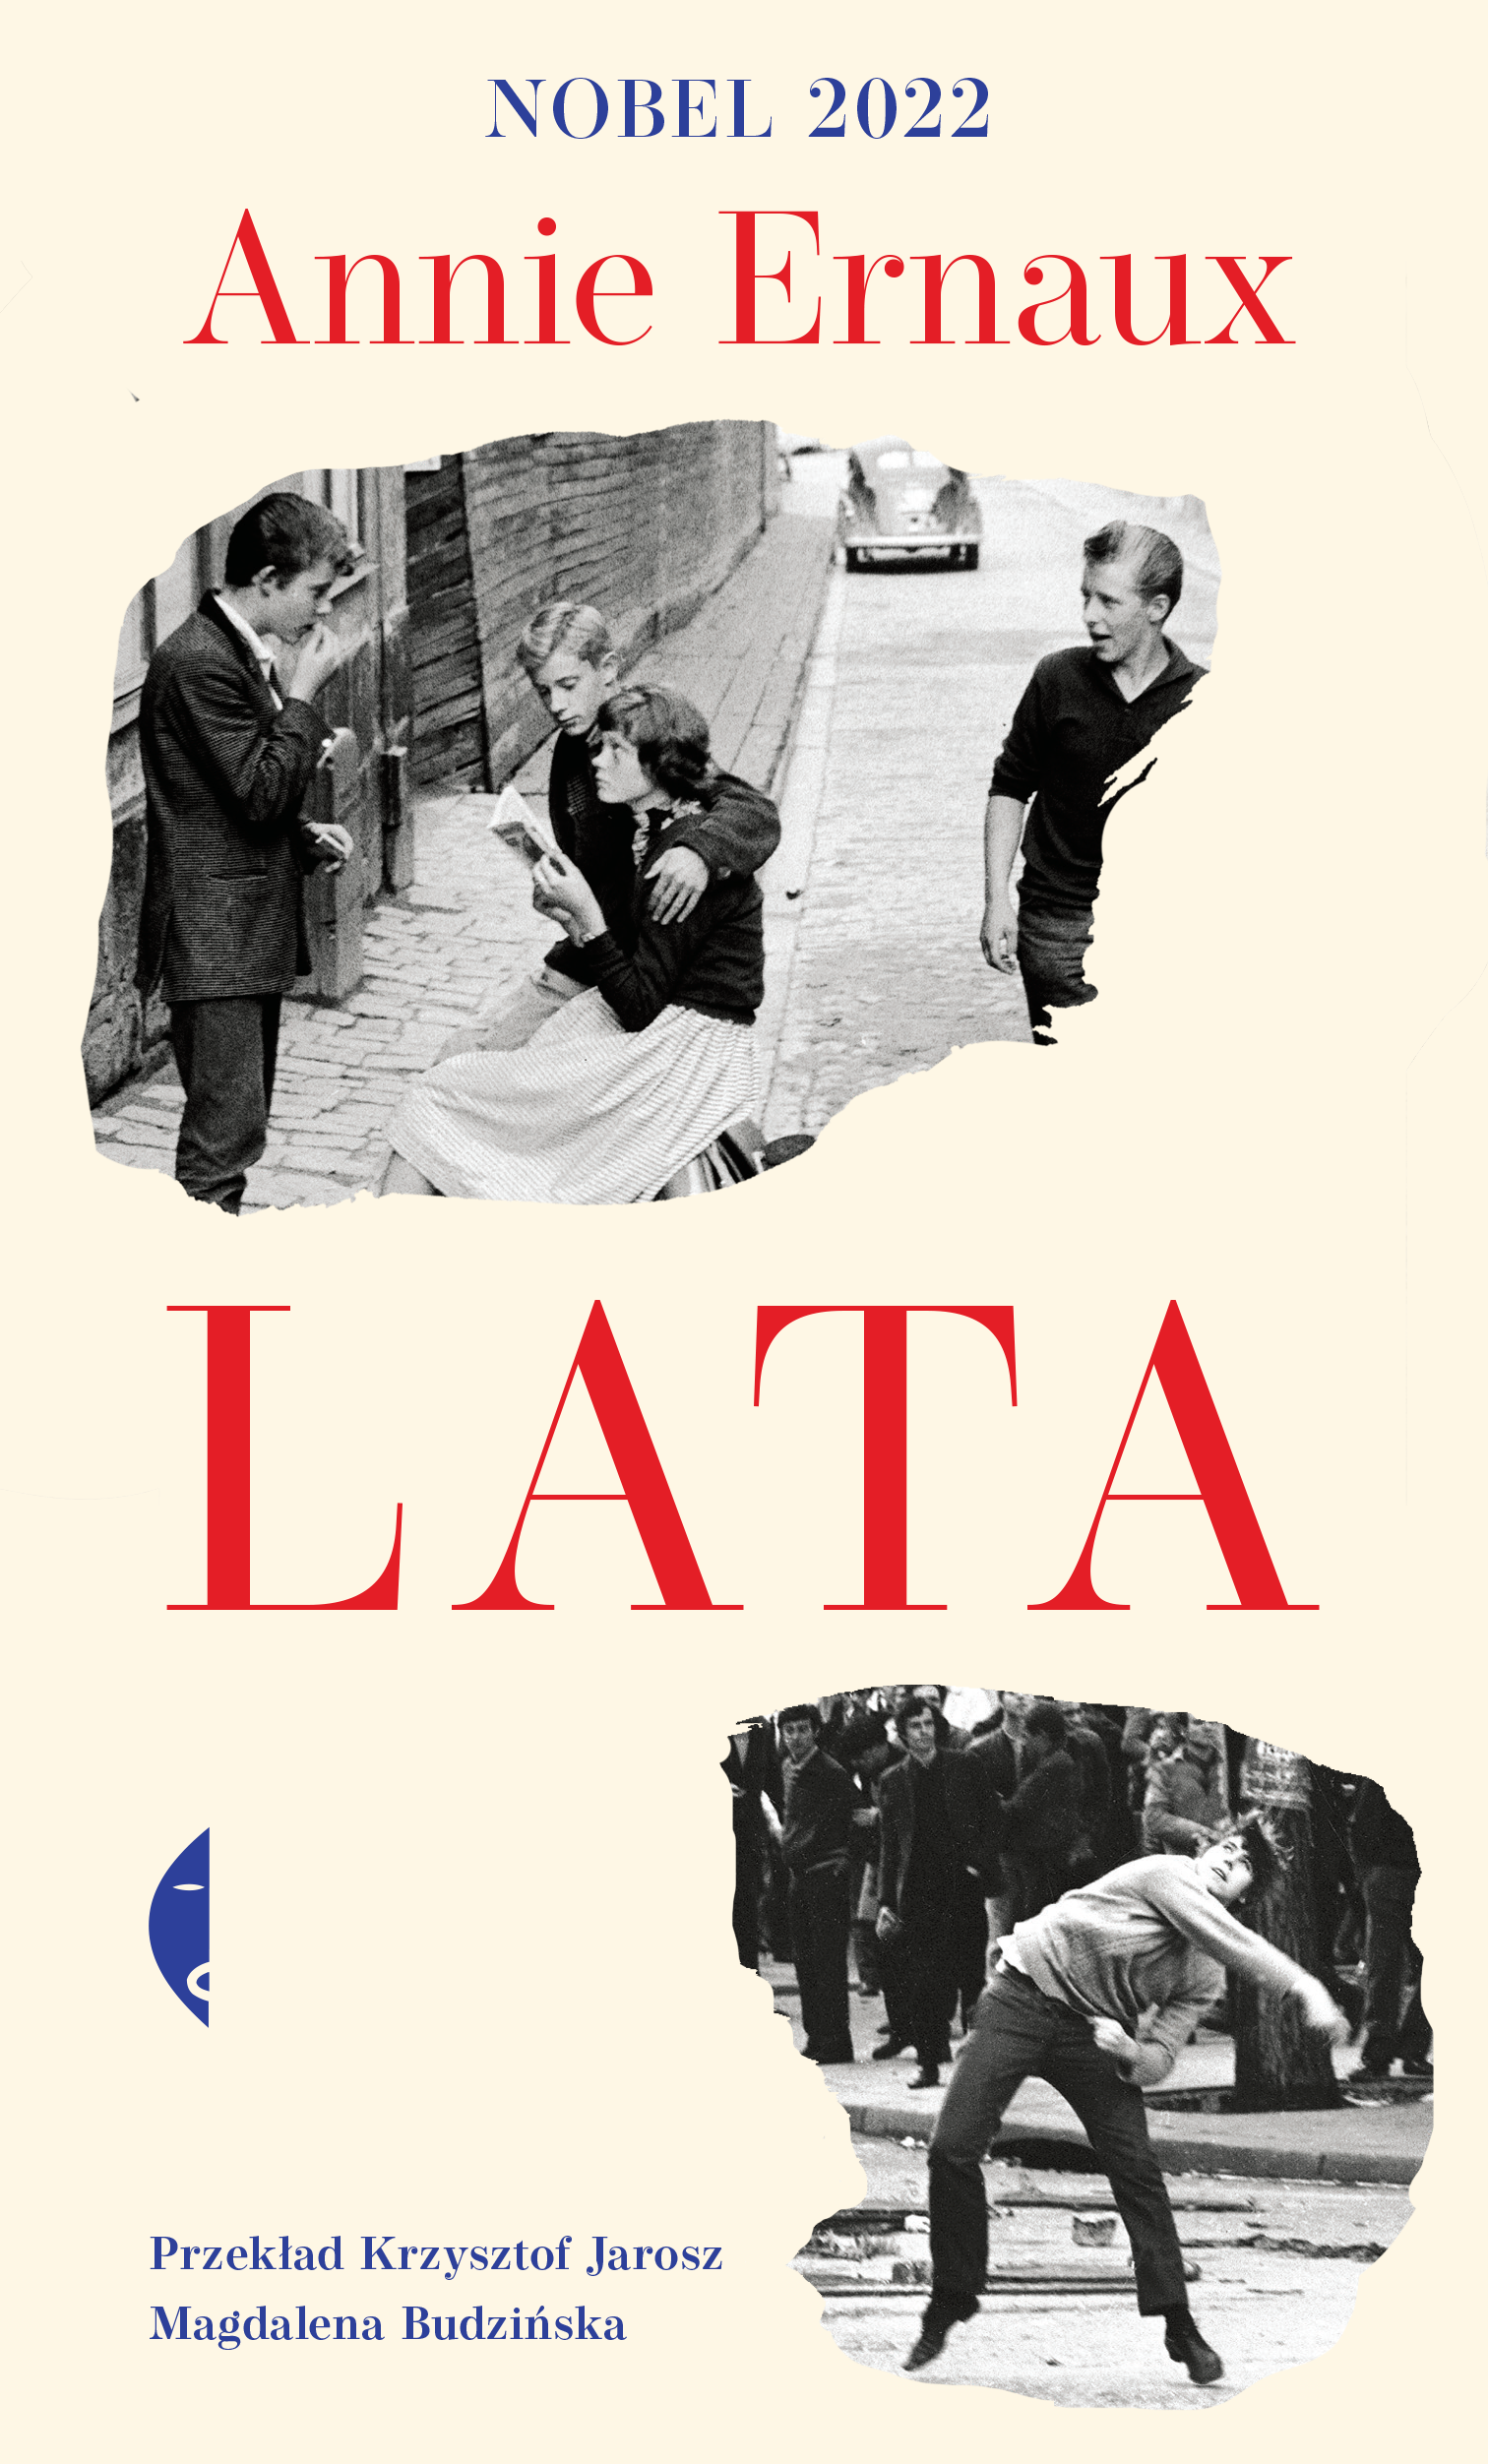 Okładka książki Annie Ernaux "Lata".